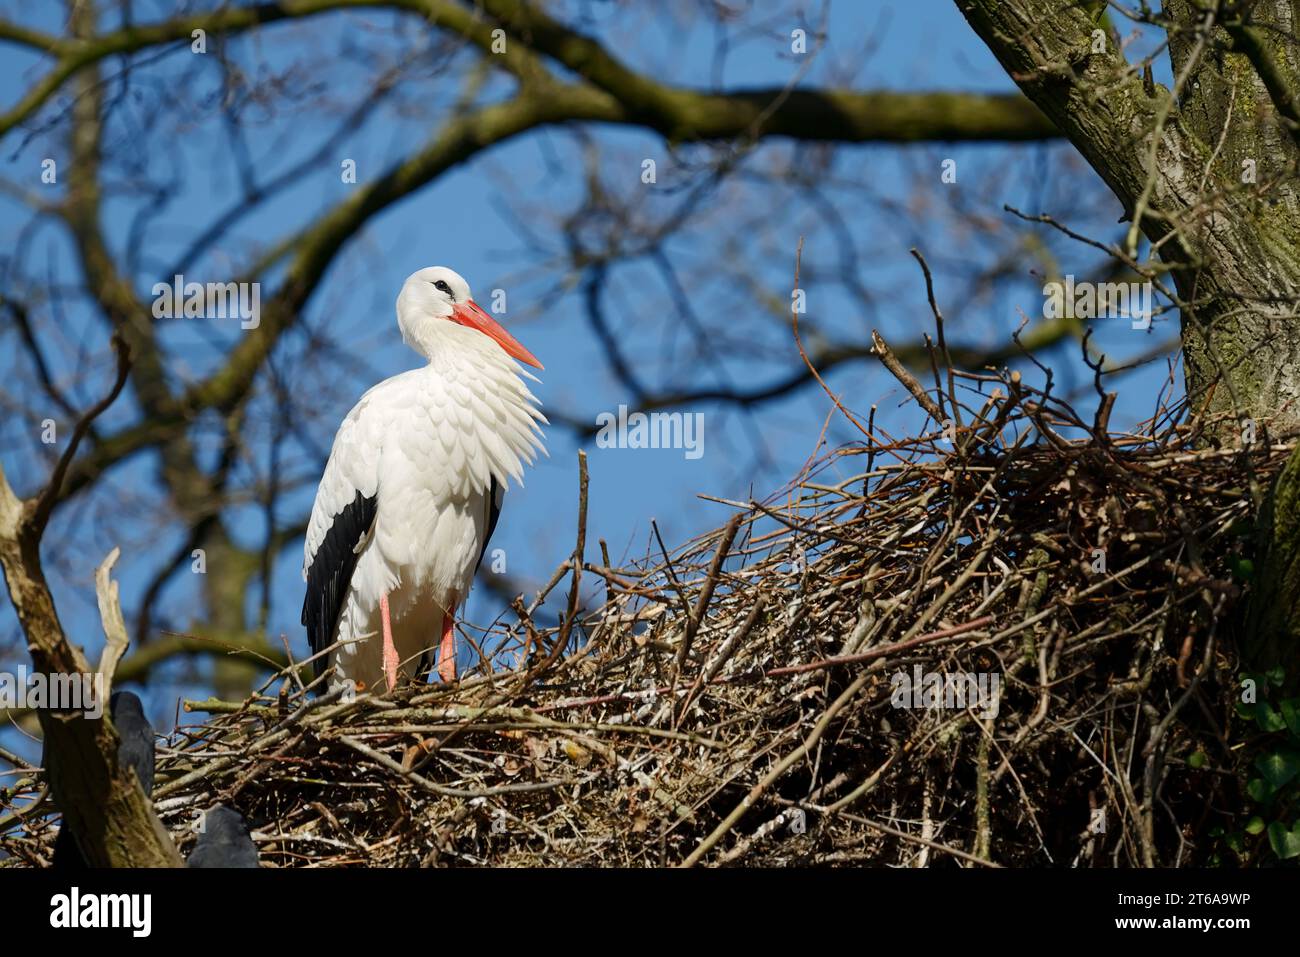 Cigogne blanche (Ciconia ciconia) im Nest, Rhénanie du Nord-Westphalie, Allemagne | Weißstorch (Ciconia ciconia) auf dem Nest, Rhénanie-du-Nord-Westphalie, Allemagne Banque D'Images